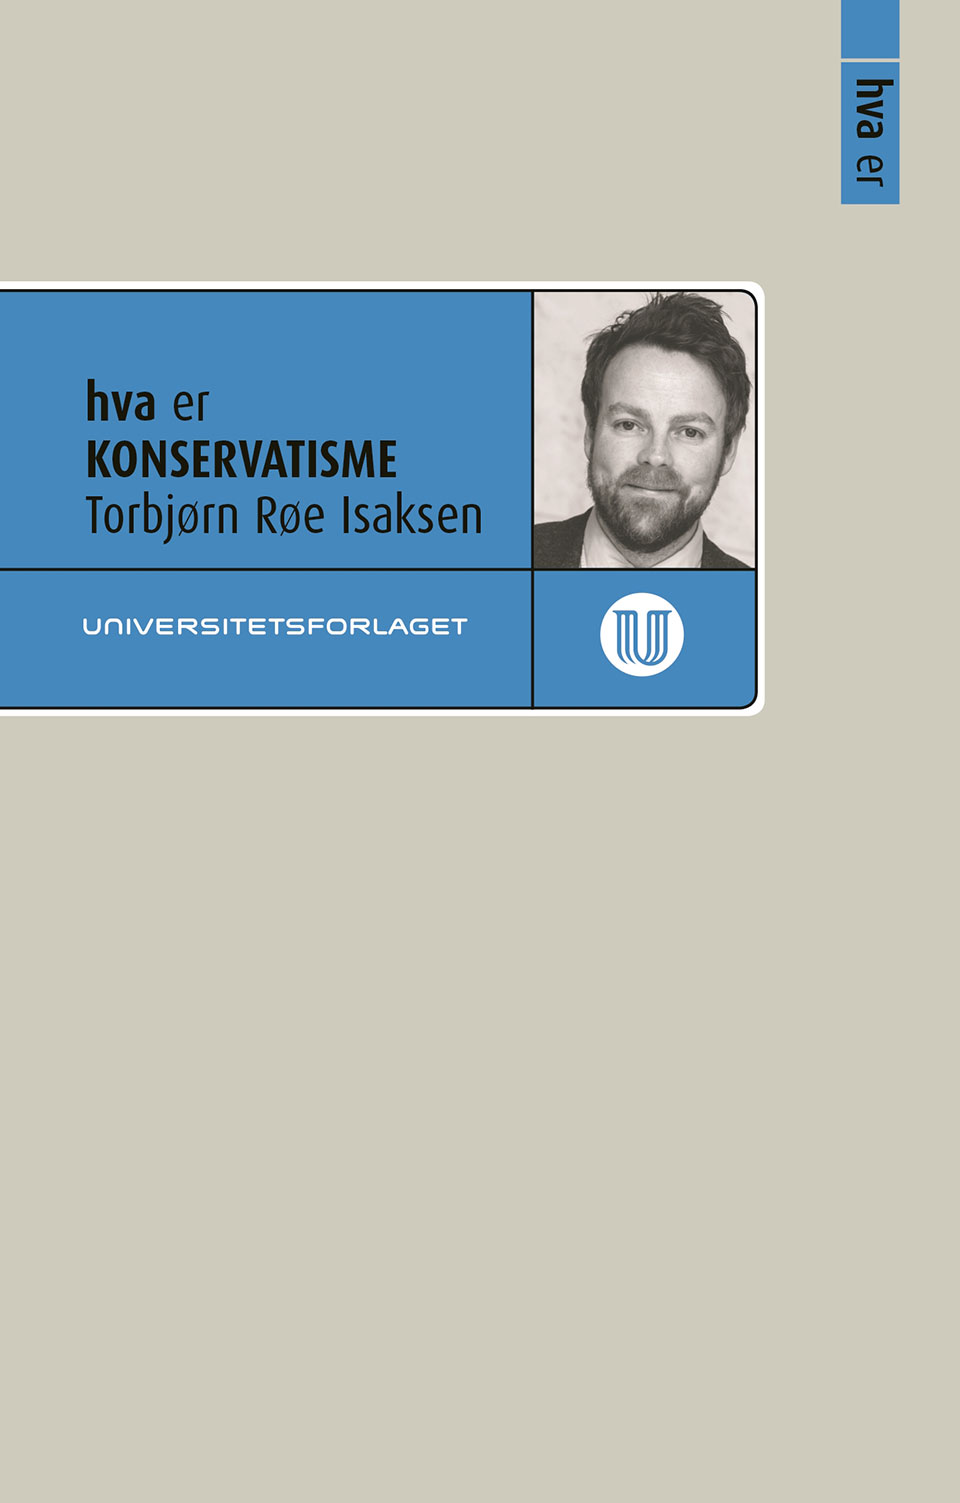 Torbjørn Røe Isaksens Hva er konservatisme